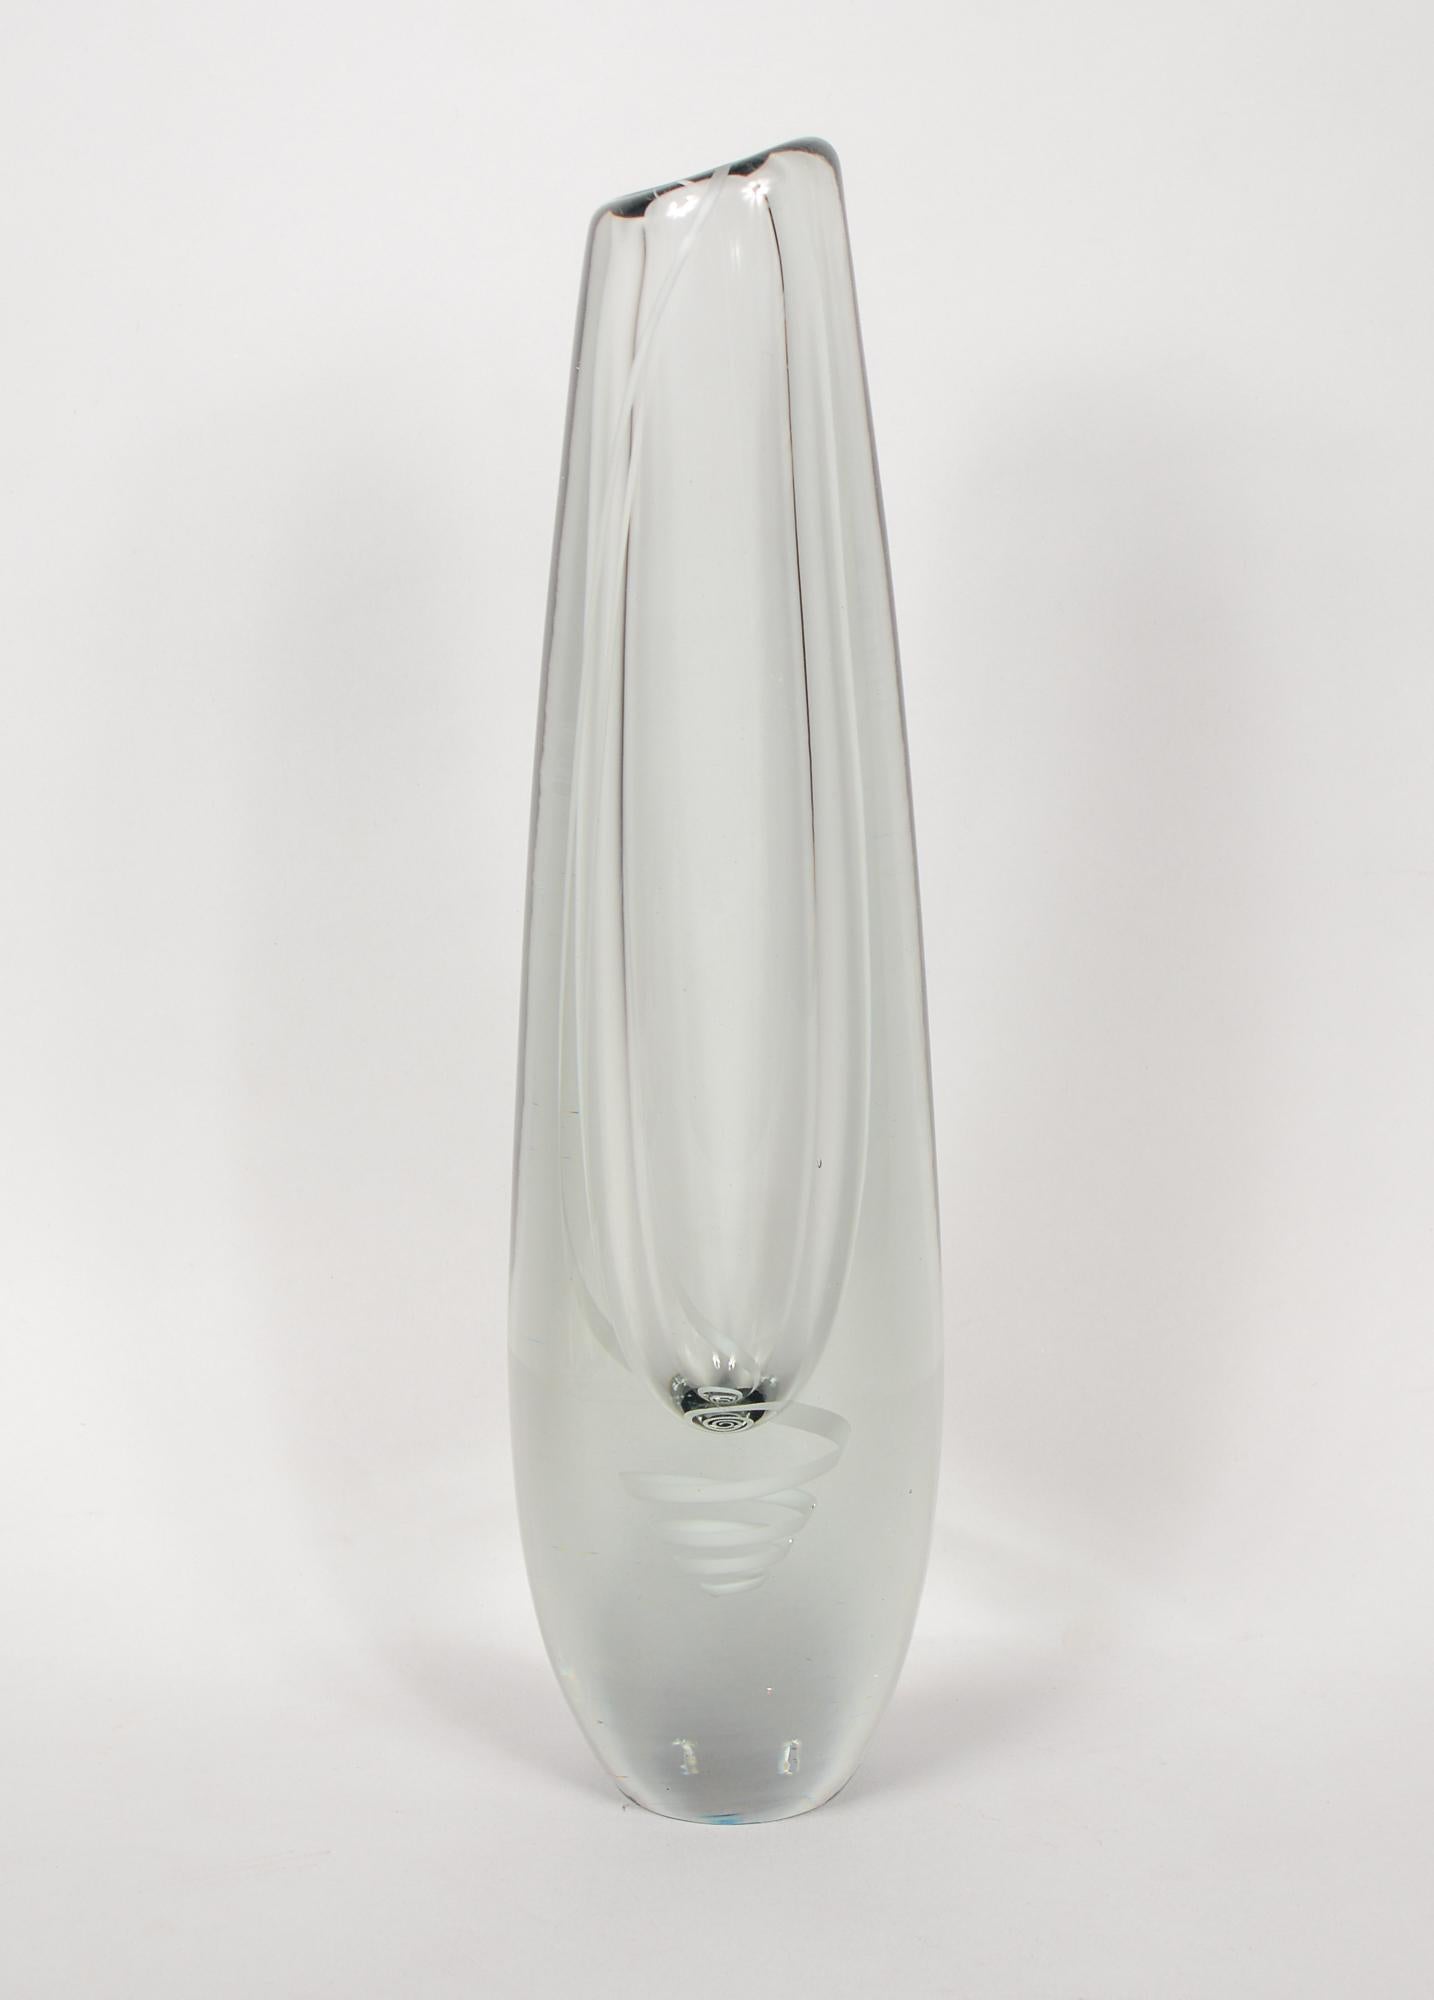 Serpentini-Vase, entworfen von Gunnel Nyman im Jahr 1954. Die Vase wurde von Nuutajarvi Notsjo hergestellt. Diese hohe Vase hat ein weißes Band, das von der Lippe herabläuft und unterhalb der Vasenmulde in eine langgezogene Spirale übergeht.